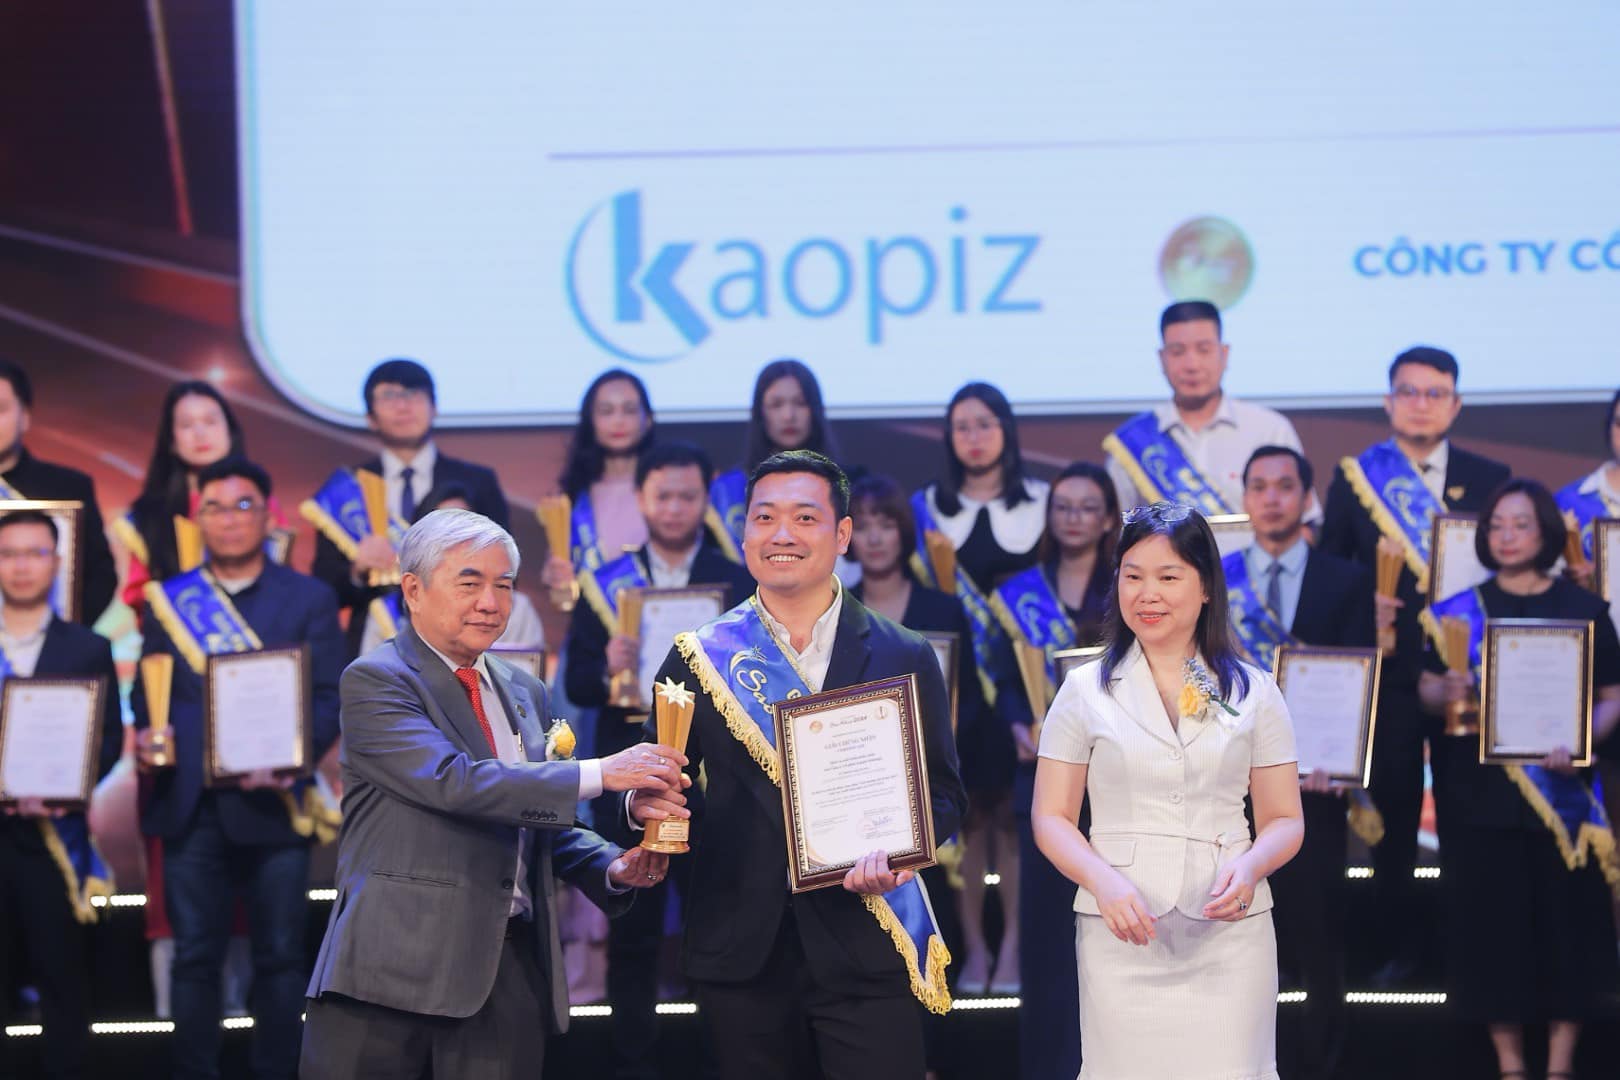 カオピーズ創立10周年、Sao Khueの受賞は大きな意味を持ちます